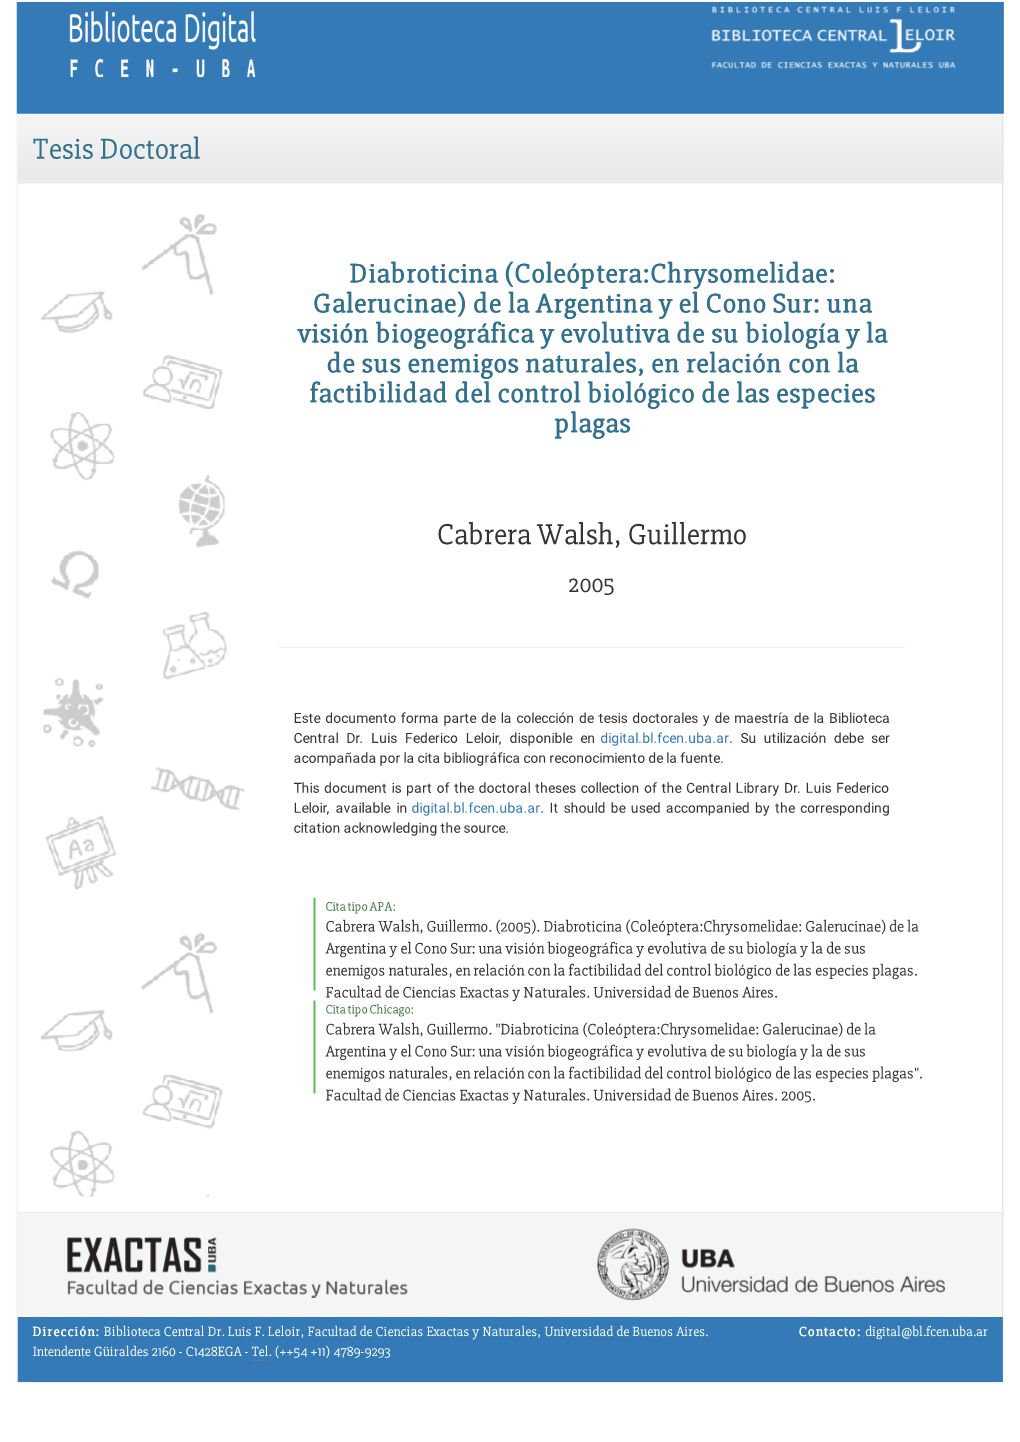 Cabrera Walsh, Guillermo. 2005 "Diabroticina (Coleóptera:Chrysomelidae: Galerucinae) De La